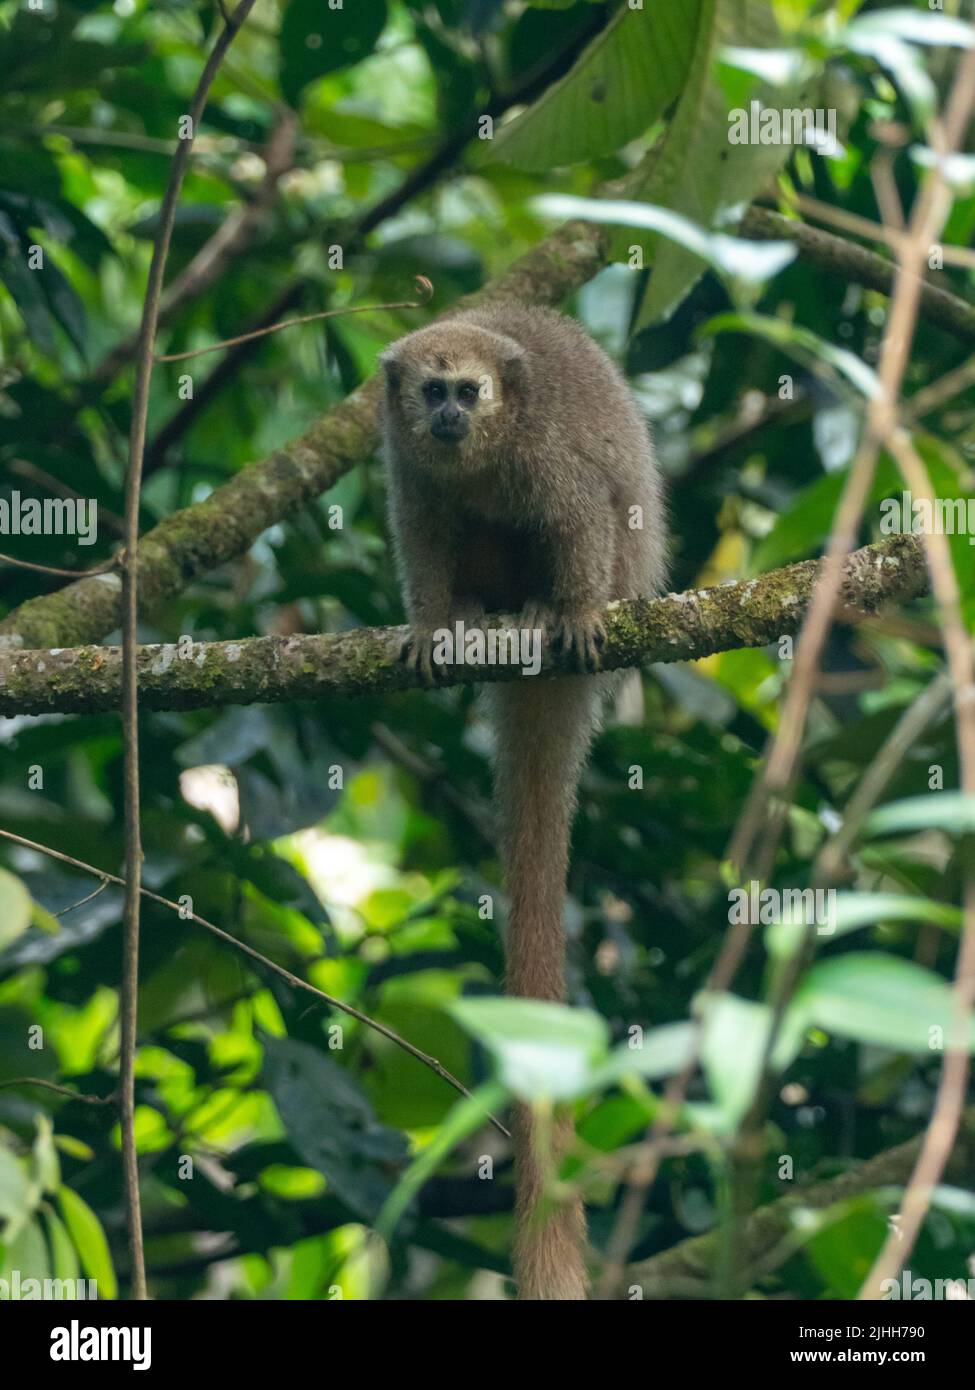 Rio Mayo Monkey Titi, Plucirocebus oenanthe, primate en danger critique endémique à la haute rivière mayonnaise du nord-est du Pérou Banque D'Images